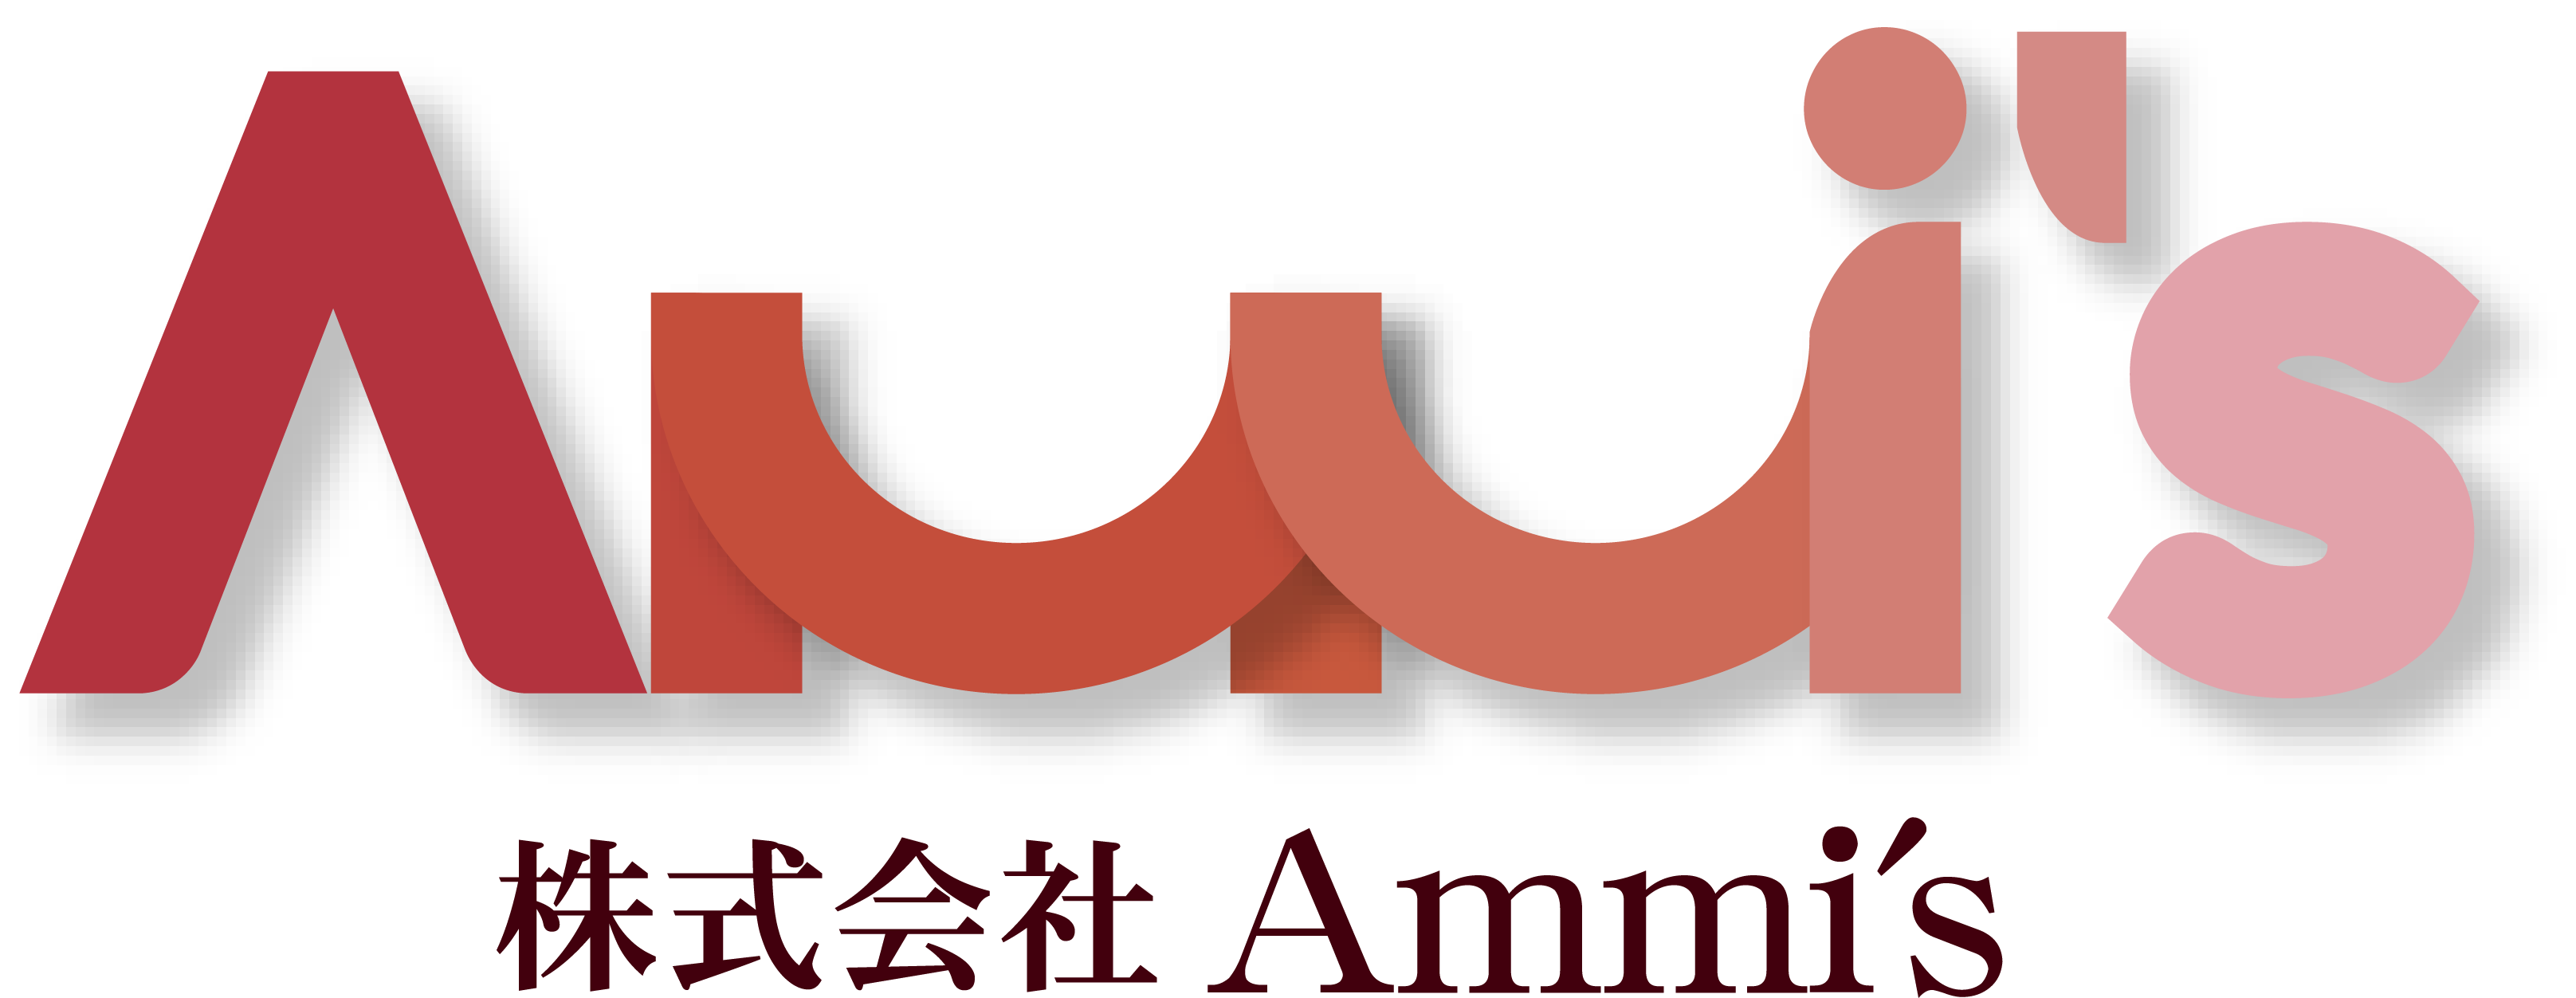 Ammi'sのロゴ